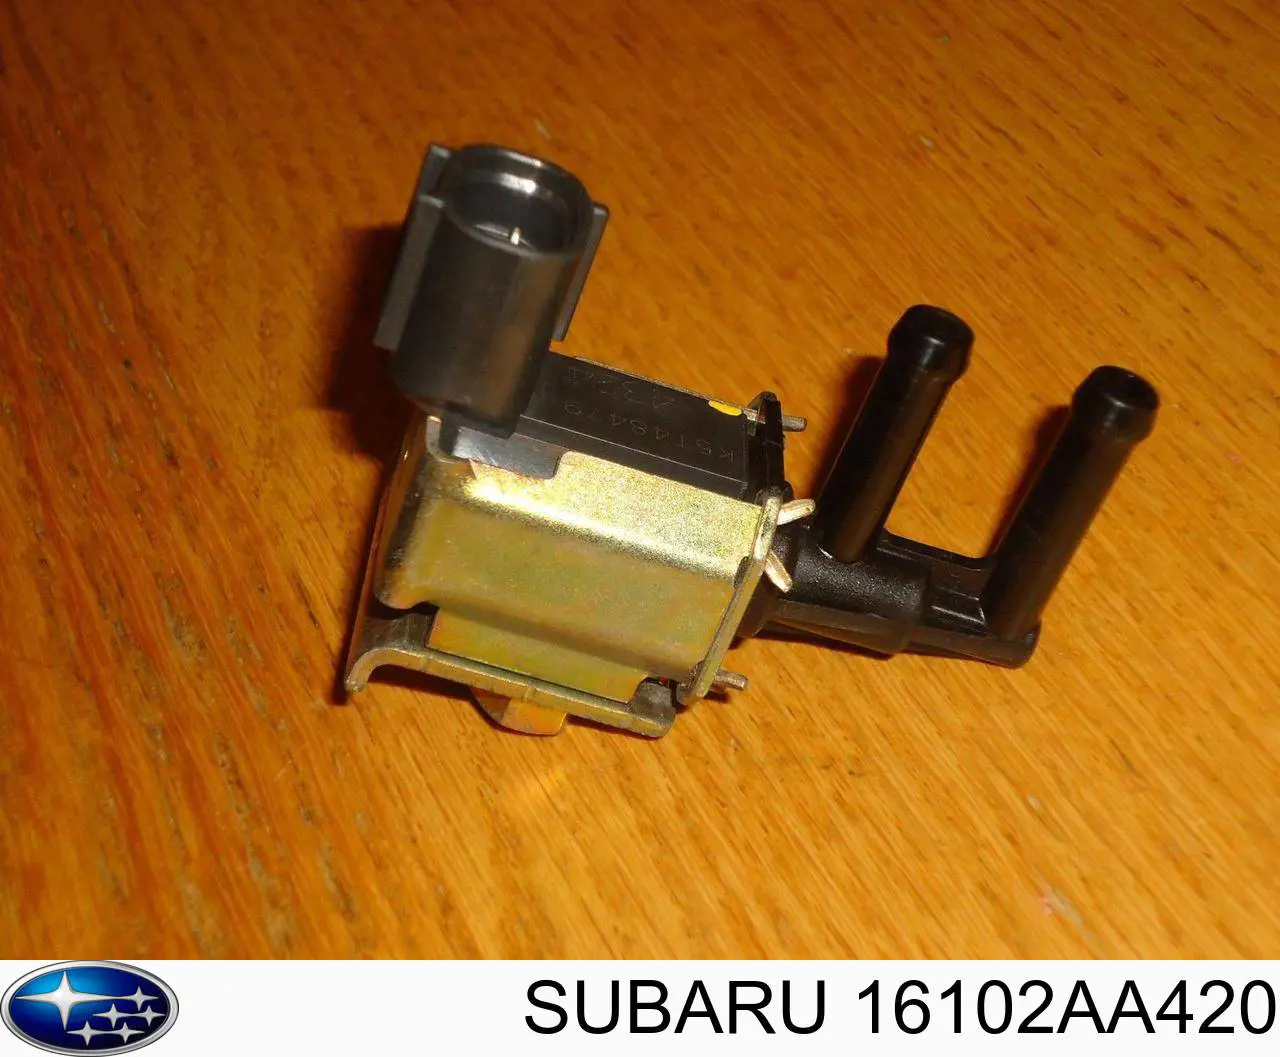 16102AA420 Subaru